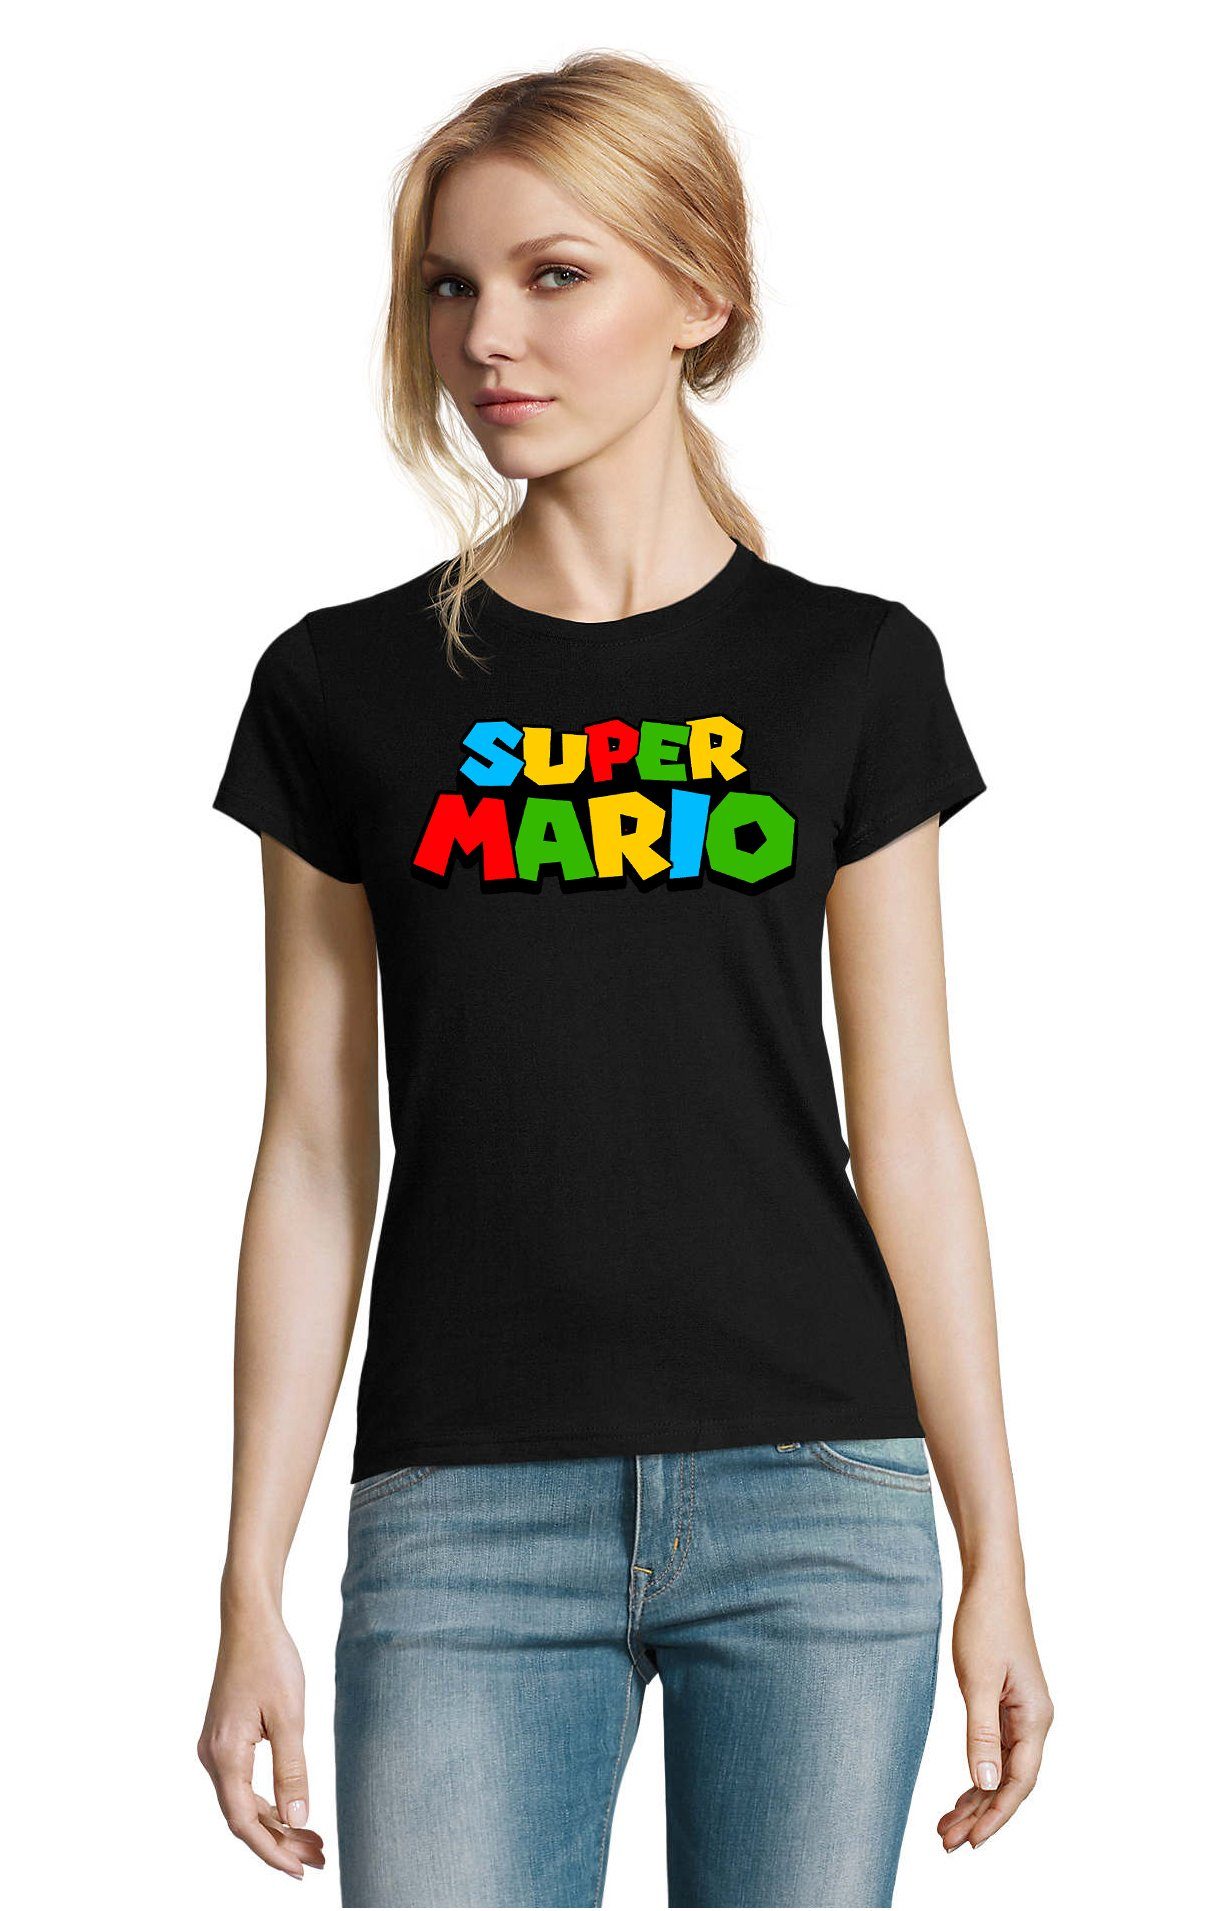 Blondie & Brownie T-Shirt Damen Super Mario Retro Gamer Gaming Konsole Spiele